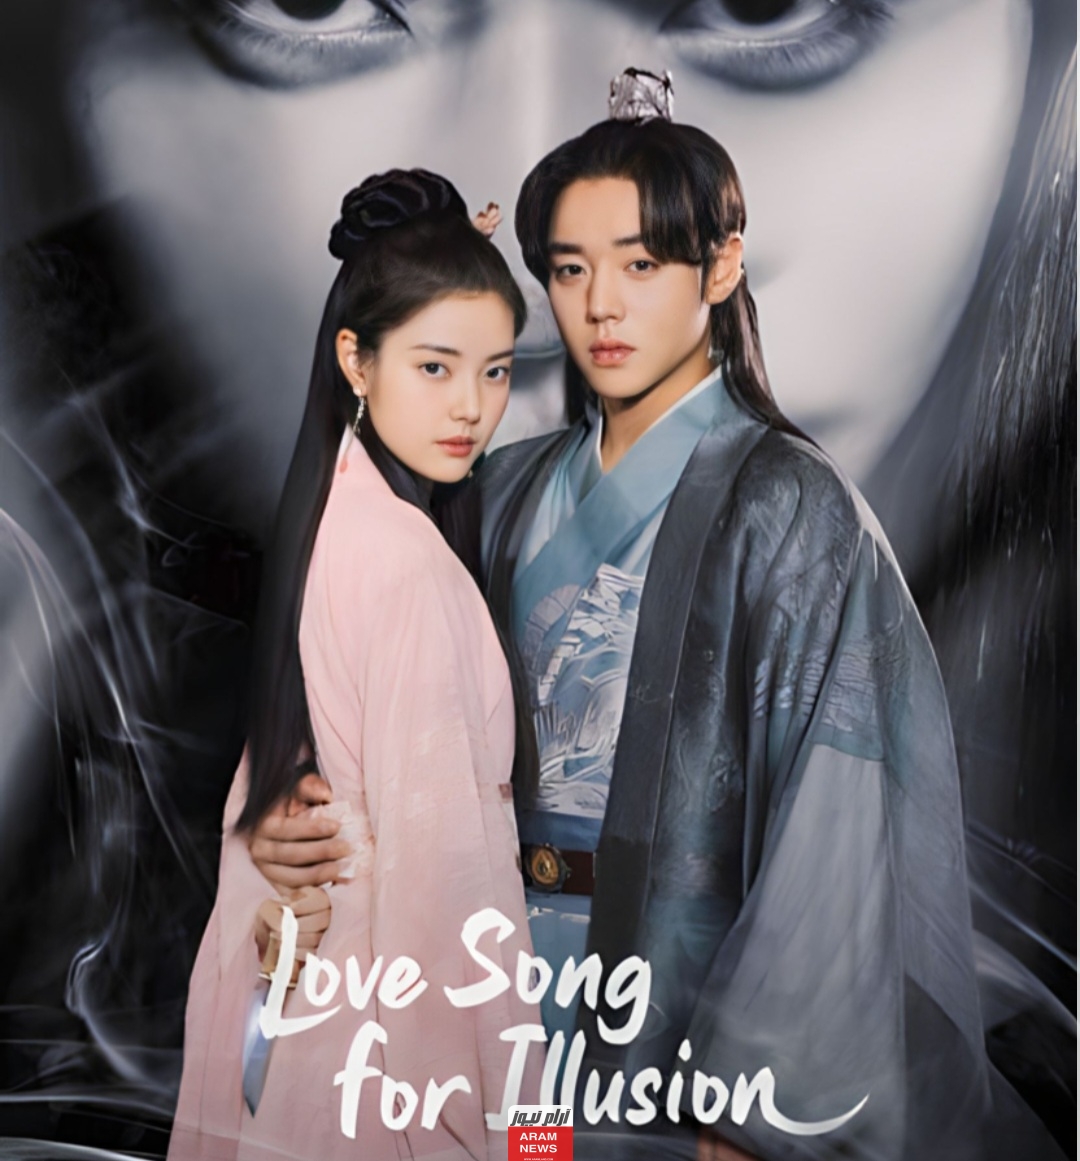 مشاهدة مسلسل اغنية حب مخادعة Love Song for Illusion الحلقة 1 مترجمة كاملة بدقة HD